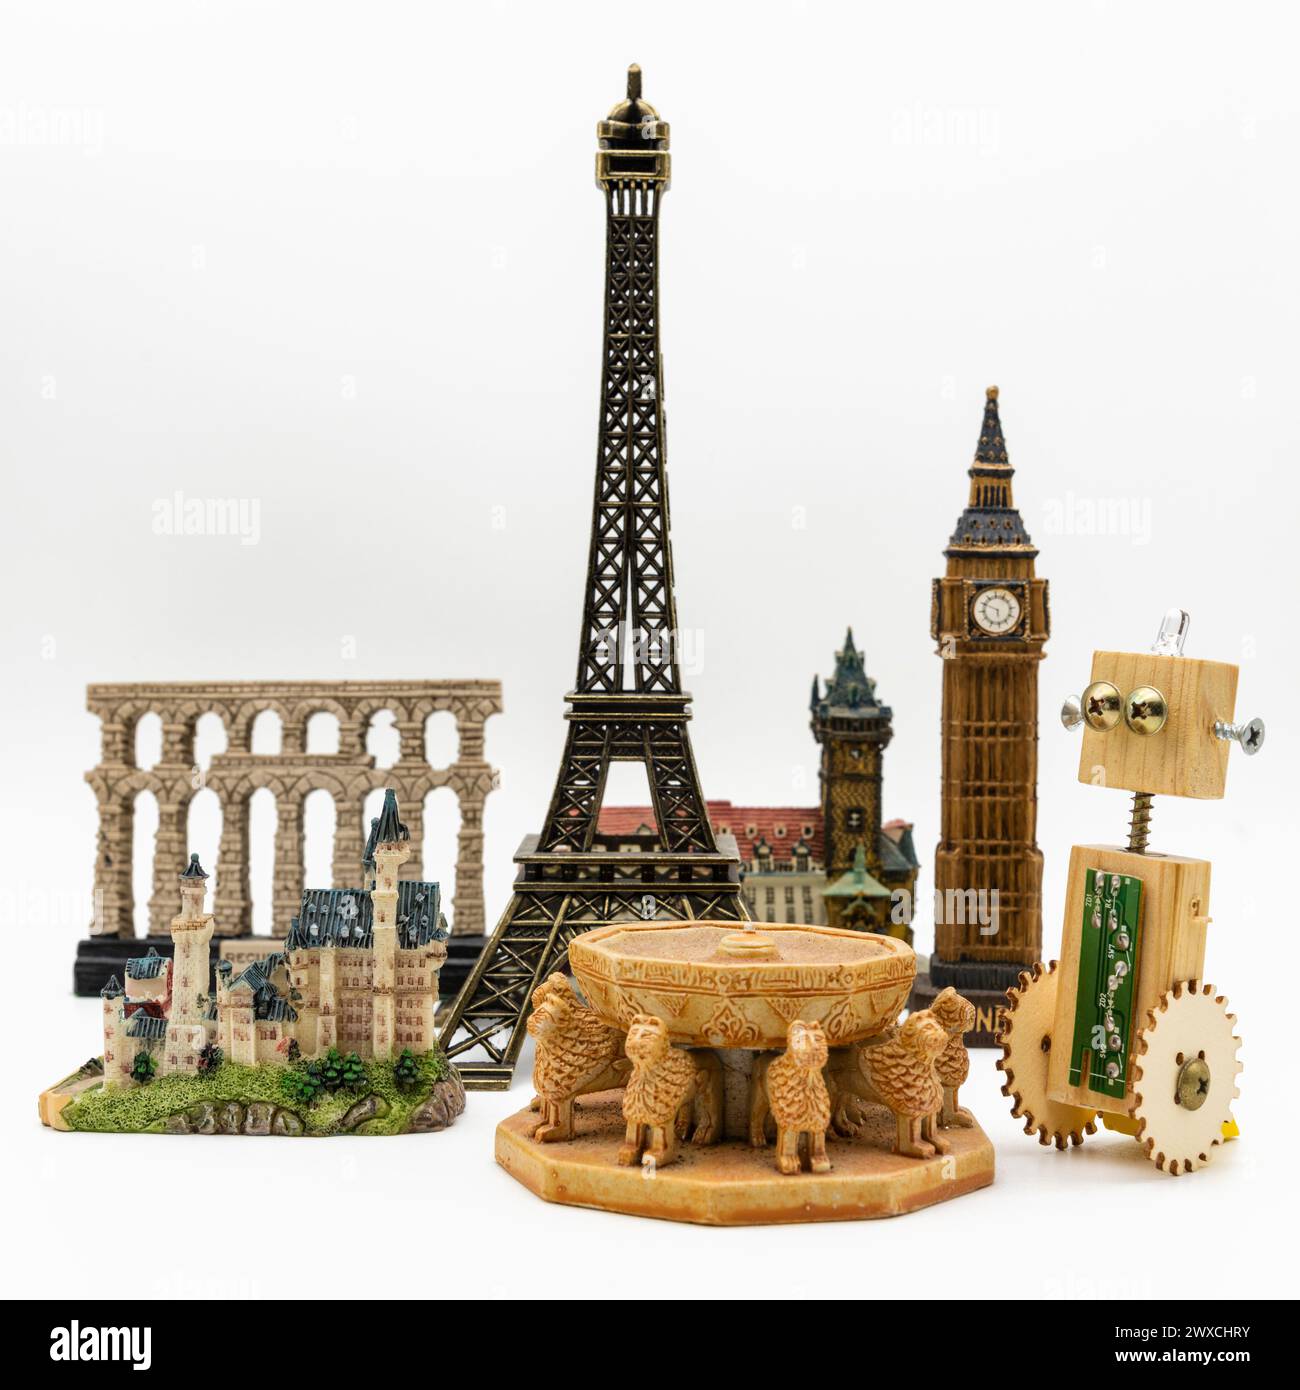 Roboter artesano de madera junto a varios monumentos del mundo como la torre Eiffel, Patio de los Leones de la Alhambra o el Big Ben Stockfoto